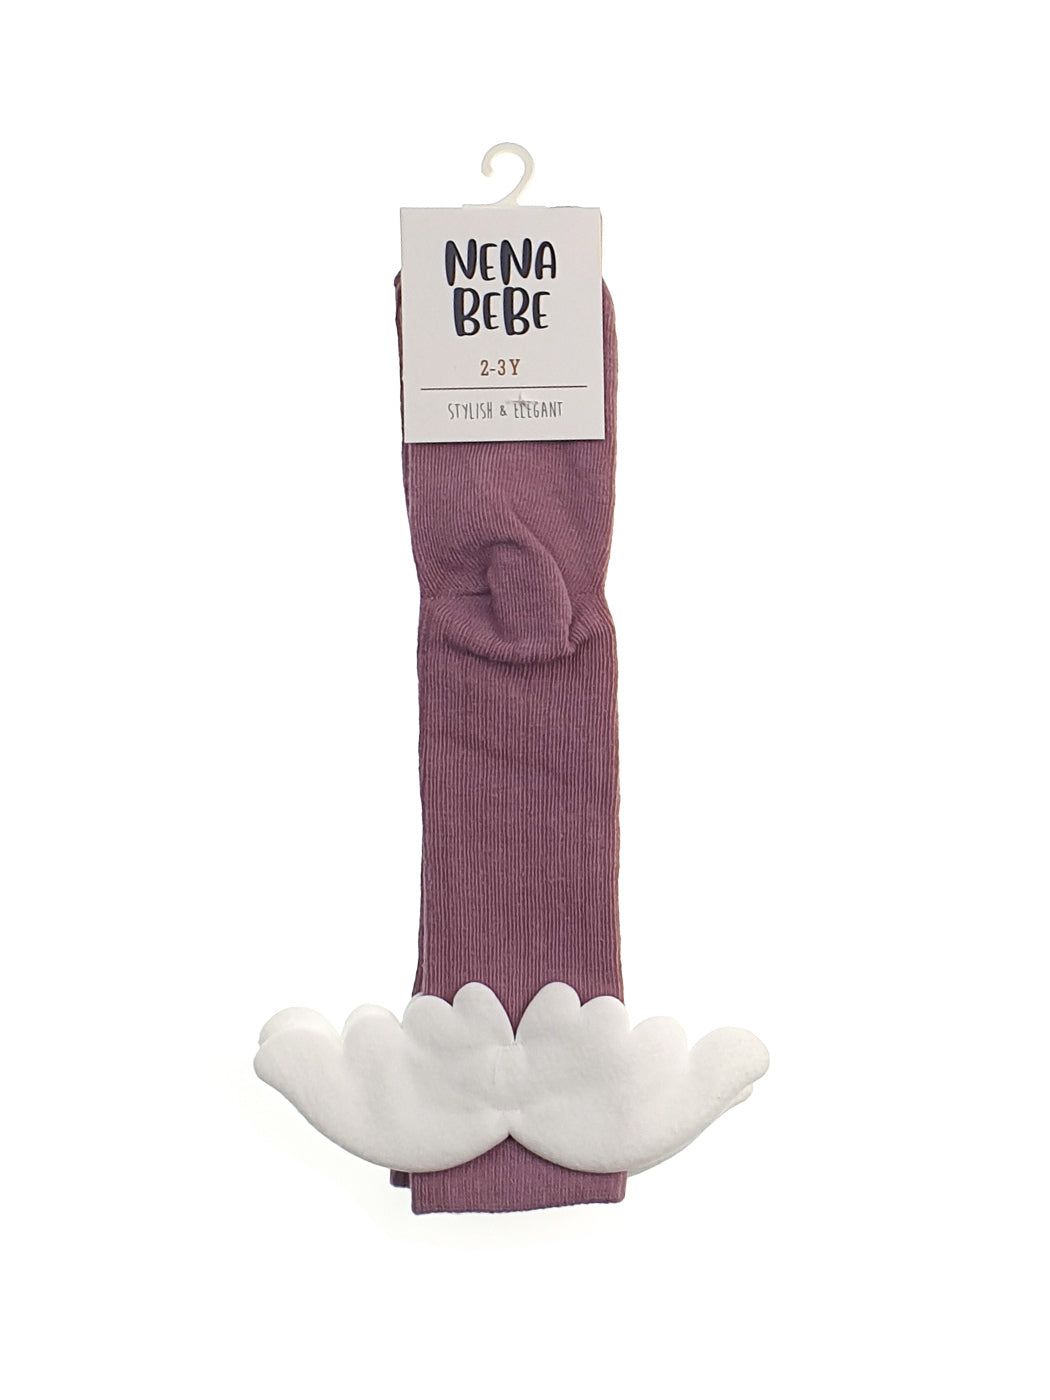 NENA BEBE Girl's Knee-high socks with wings-5008 purple